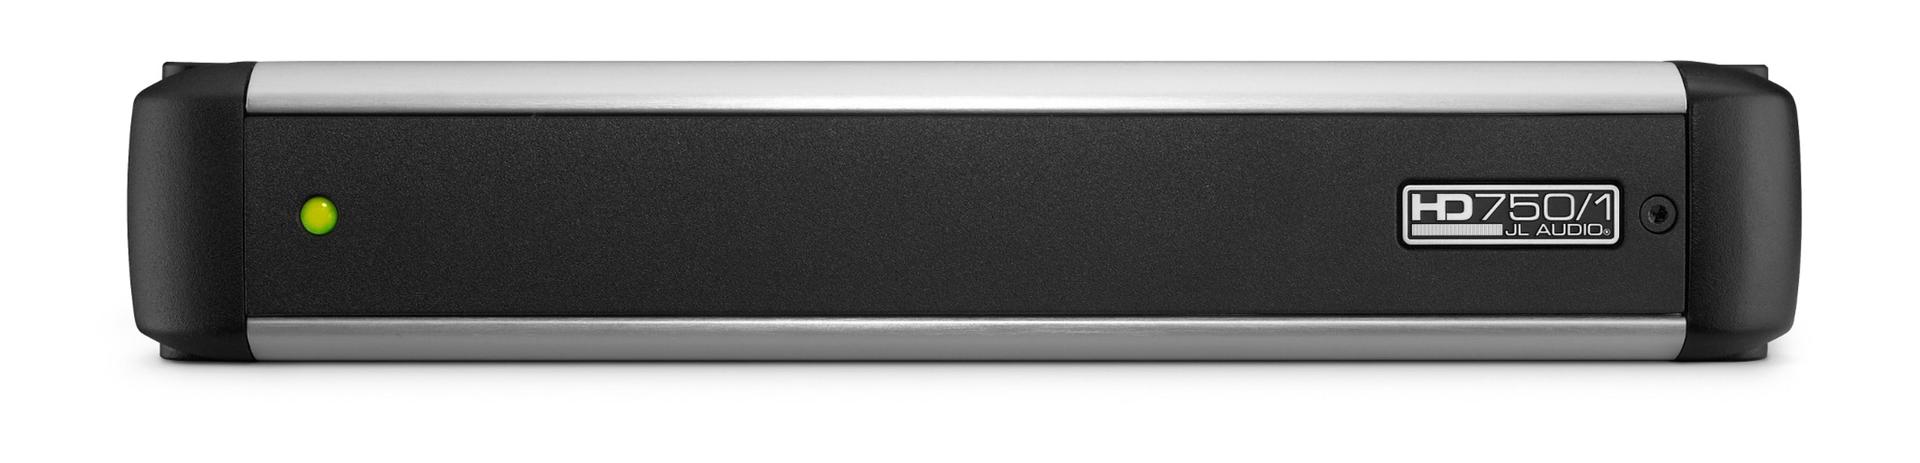 JL Audio HD750/1 Monoblock Class D Wide-Range Amplifier, 750 W (HD7501)